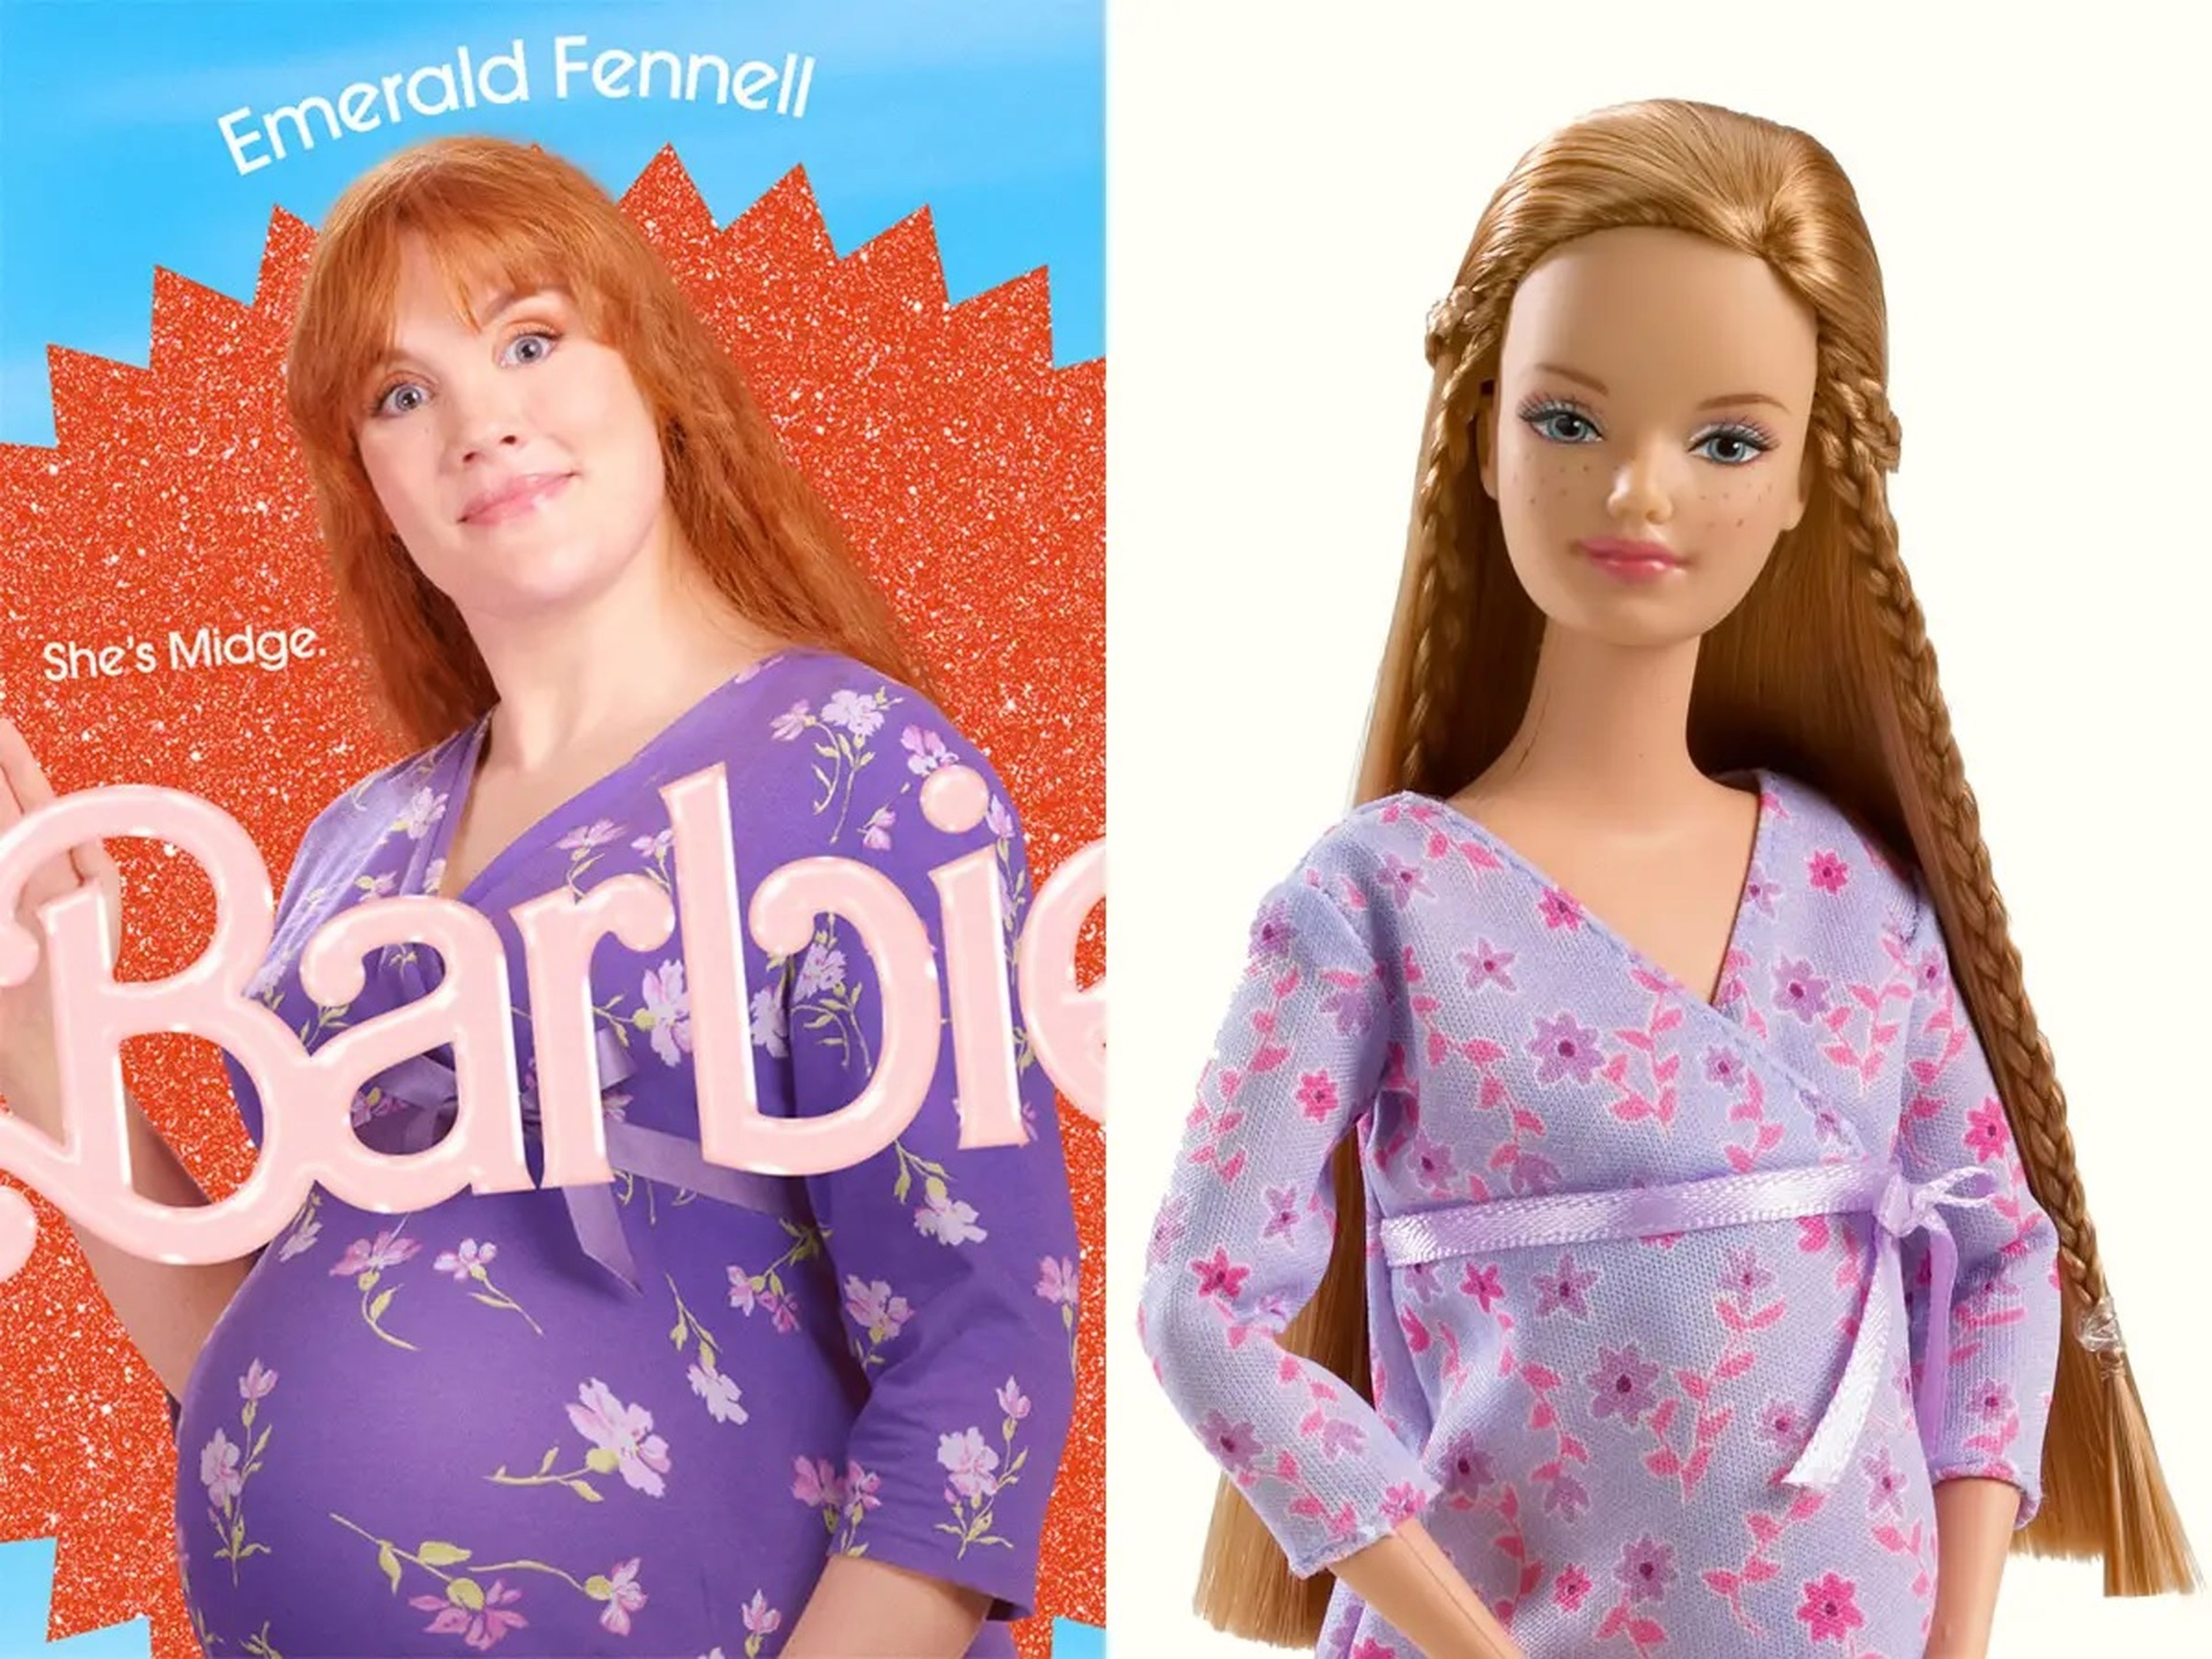 A la izquierda: Esmeralda Fennell como Midge. A la derecha: La muñeca Midge de Mattel de 2002.